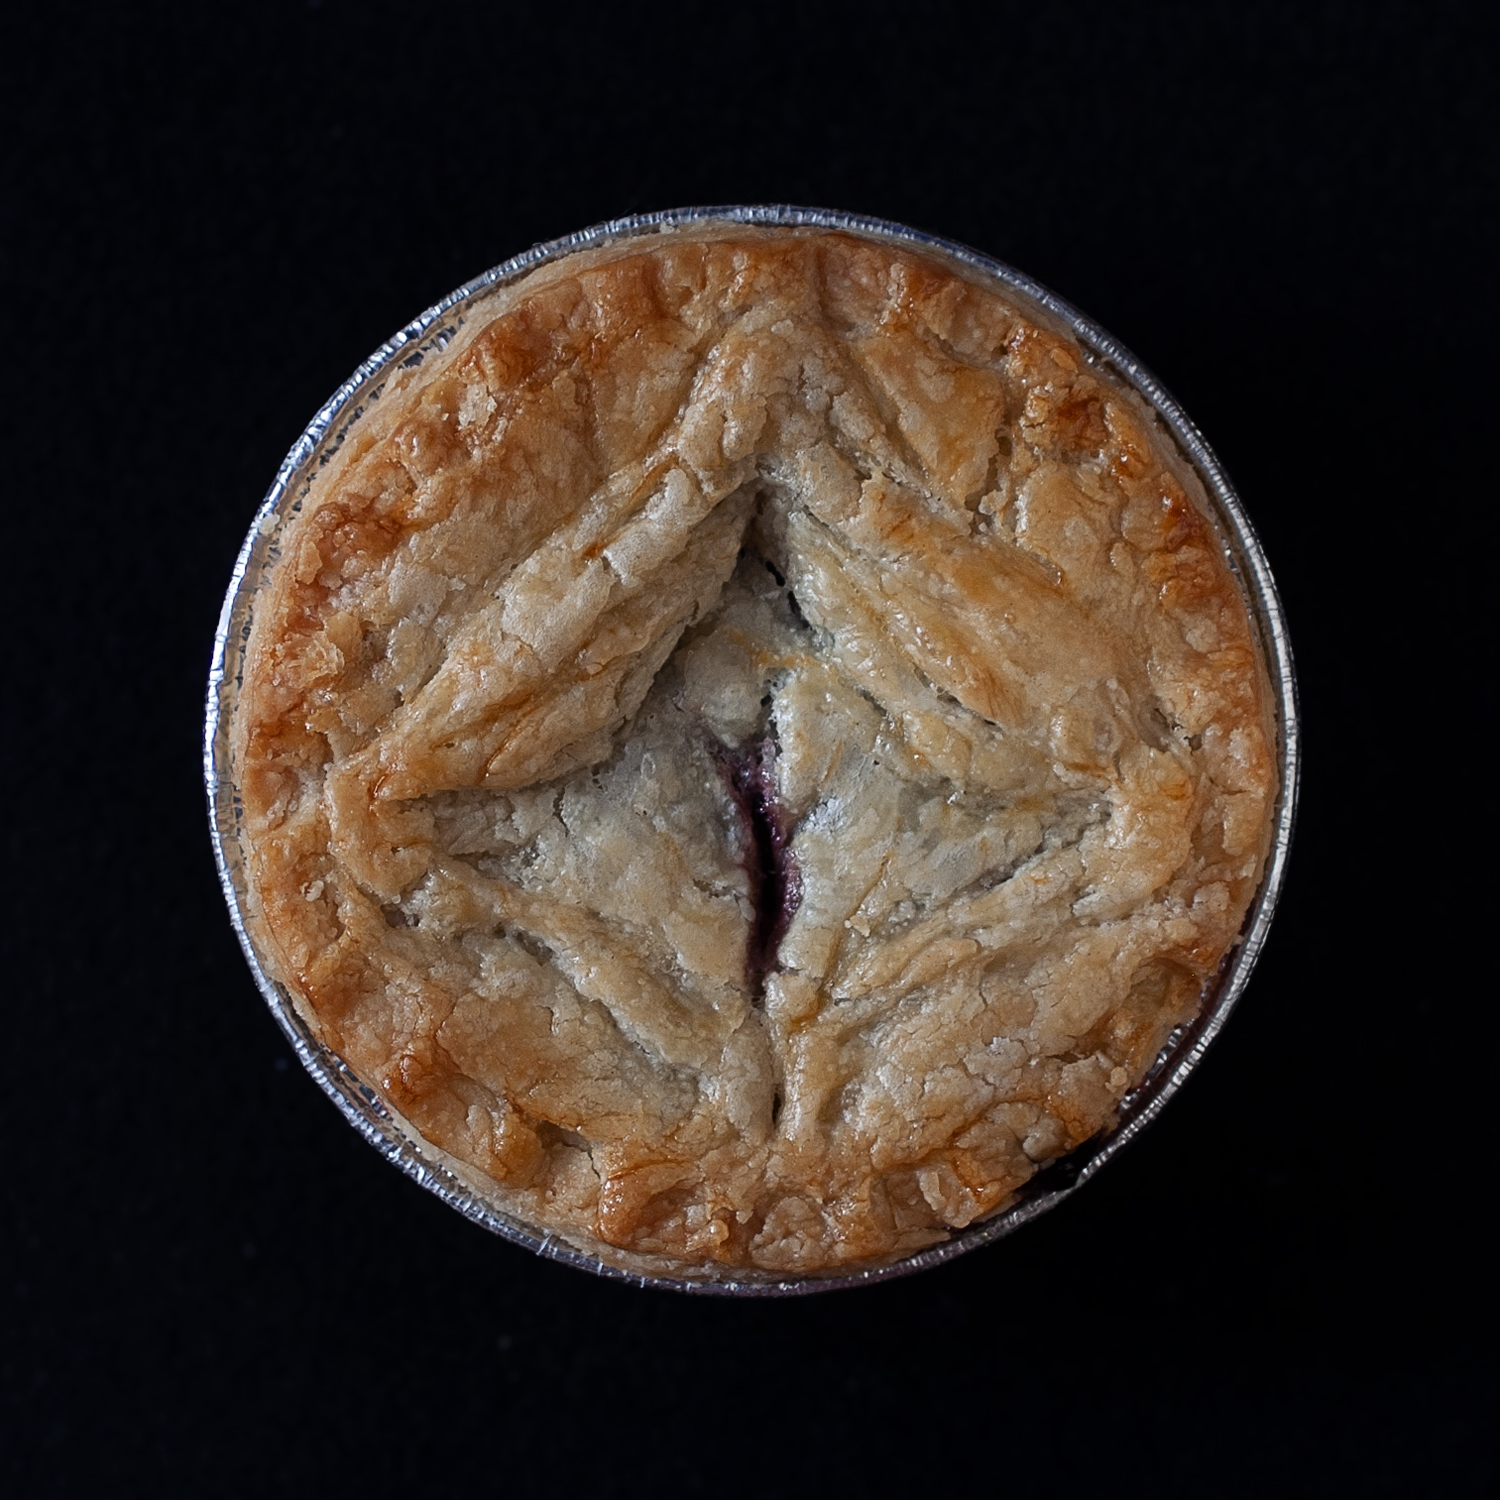 Top view of baked vulva pie number 9